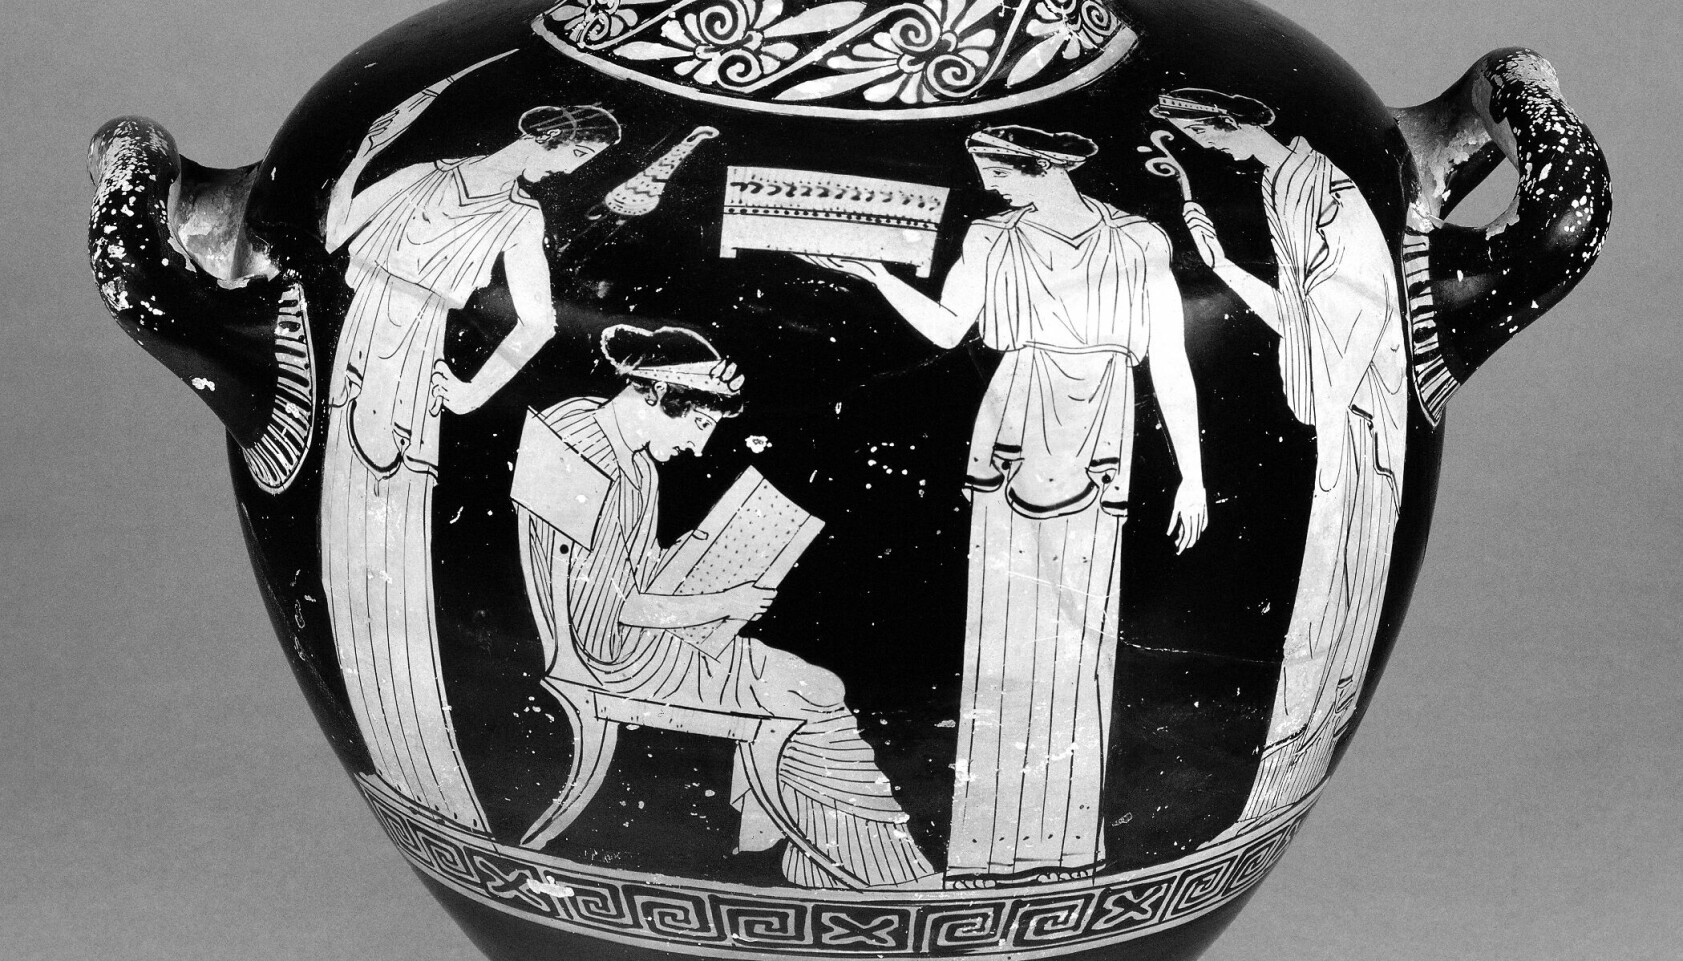 I The British Museum finnes en antikk vase som viser dikteren Sapfo sittende med en skriftrull i hendene. Historikerne vet at dette er en framstilling av diktekunstens mor, som levde for ca. 2500 år siden, fordi det finnes en tilsvarende i Athen med navnet hennes på.